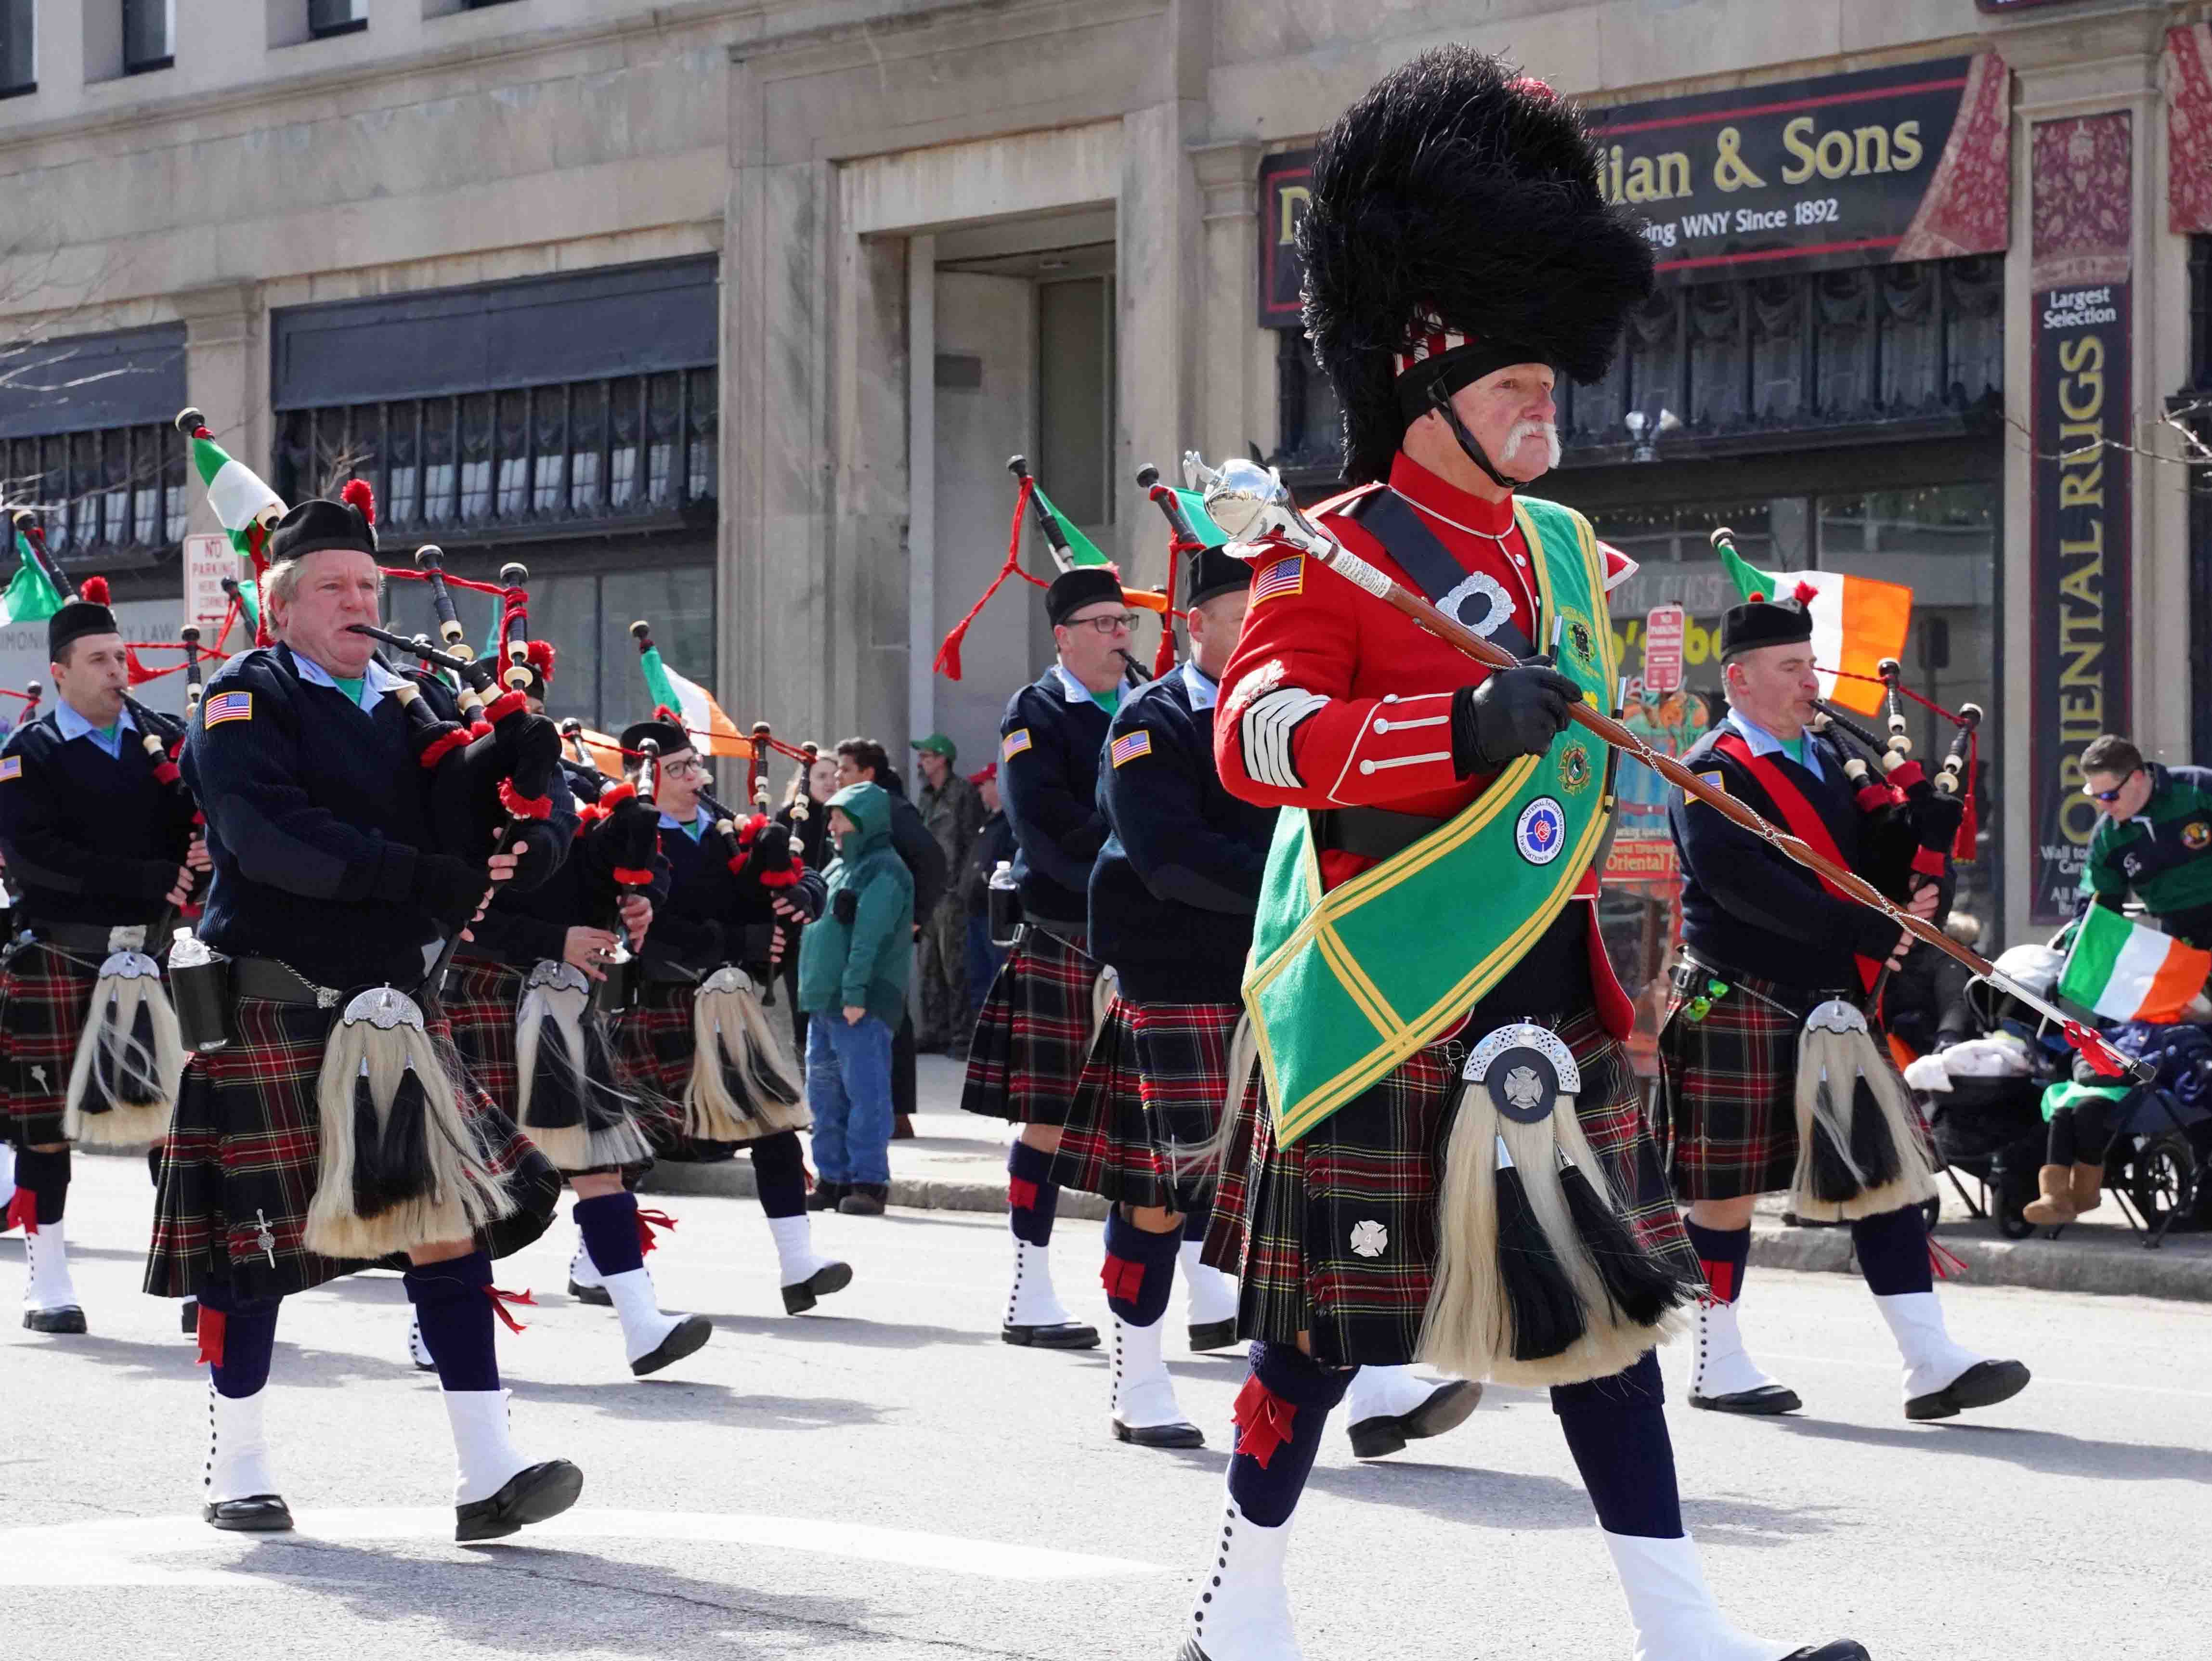 Irishmen celebrate in a St Patrick's Day parade in Buffalo, NY.